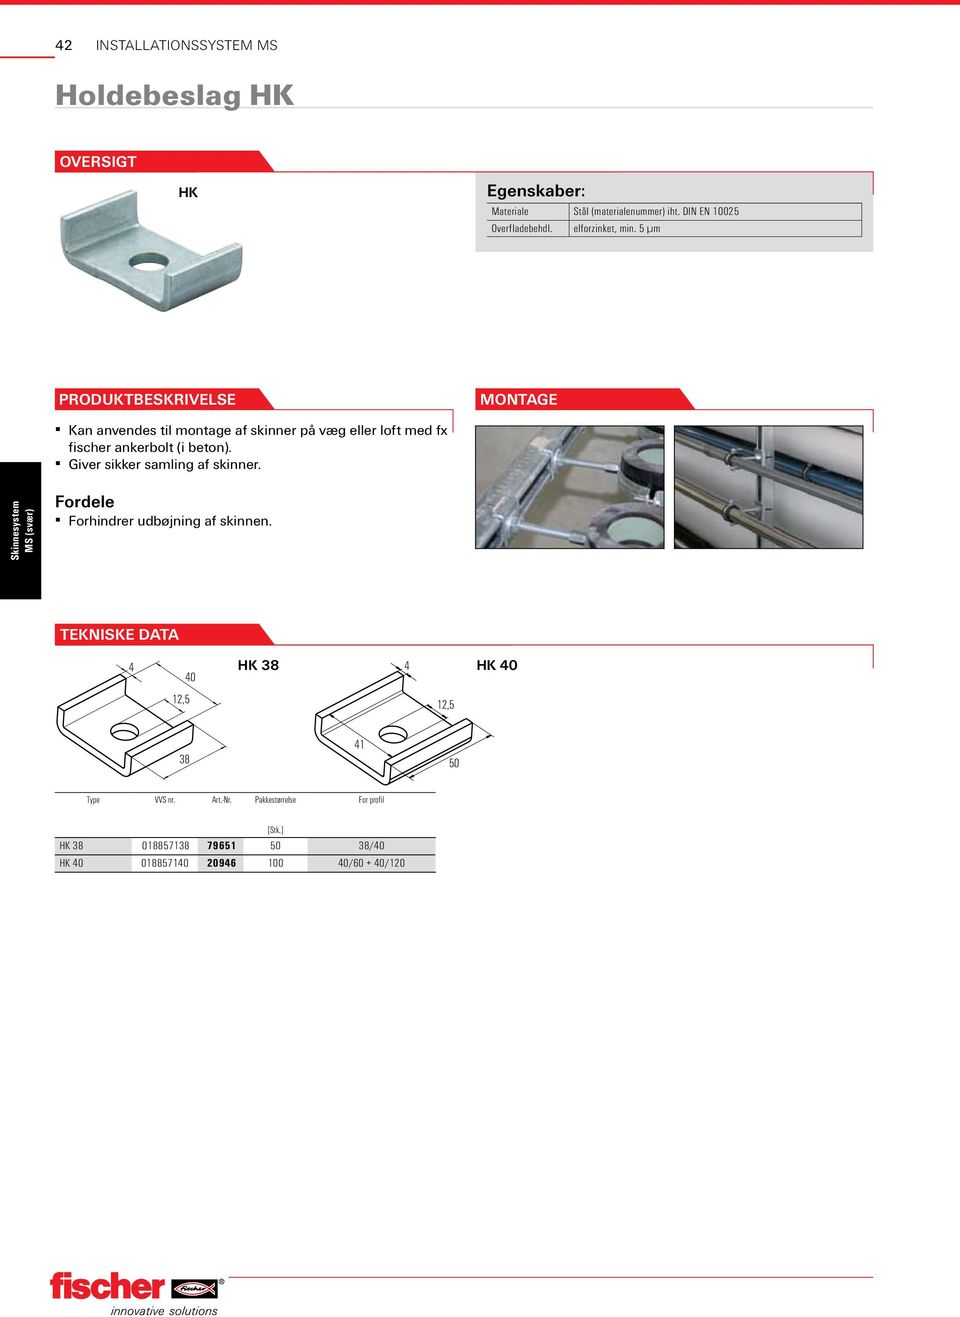 5 µm Kan anvendes til montage af skinner på væg eller loft med fx fischer ankerbolt (i beton).